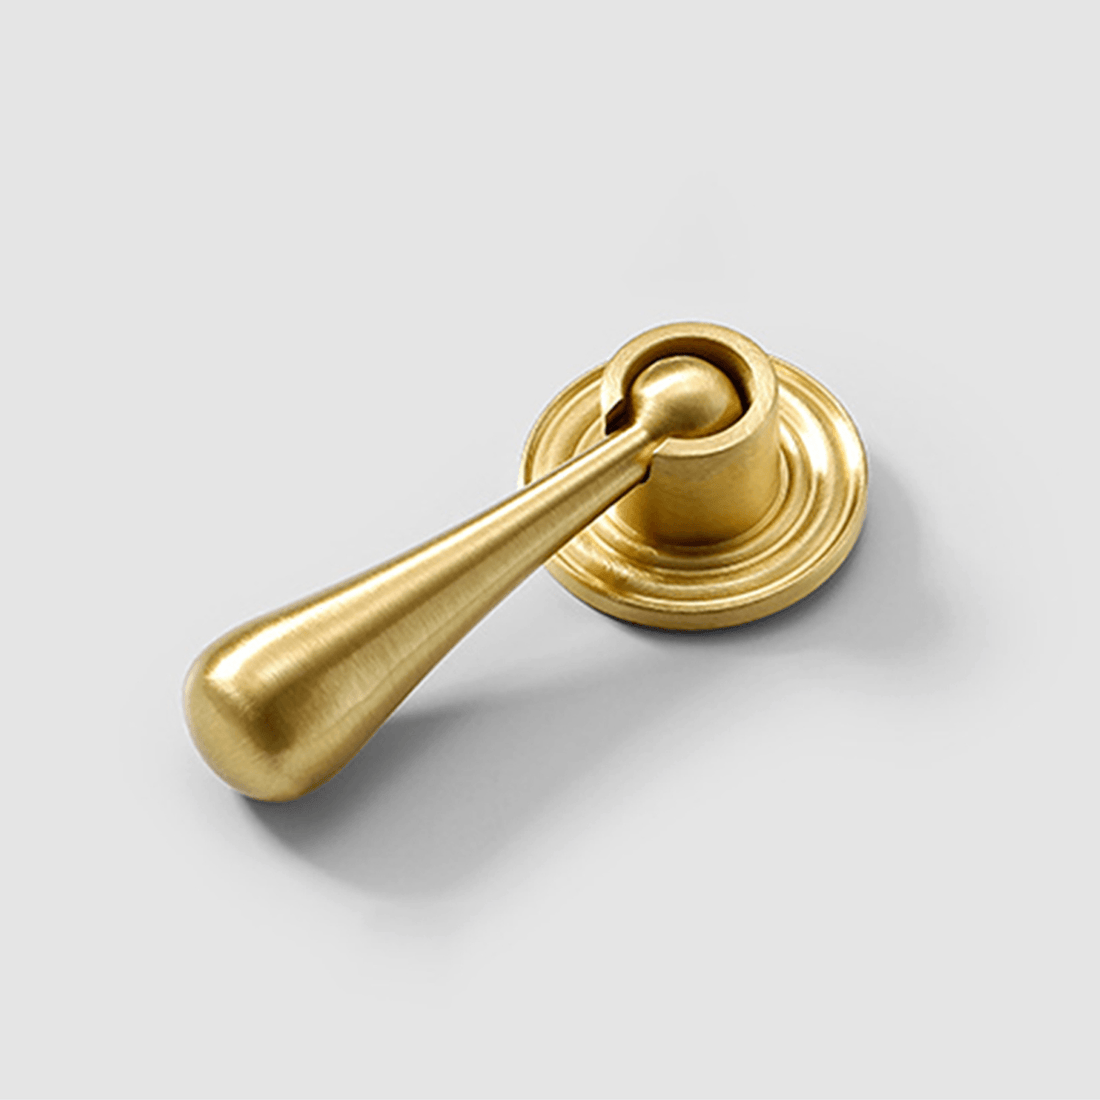 Heritage Drop Knob Knob 71mm / Gold / Brass - M A N T A R A